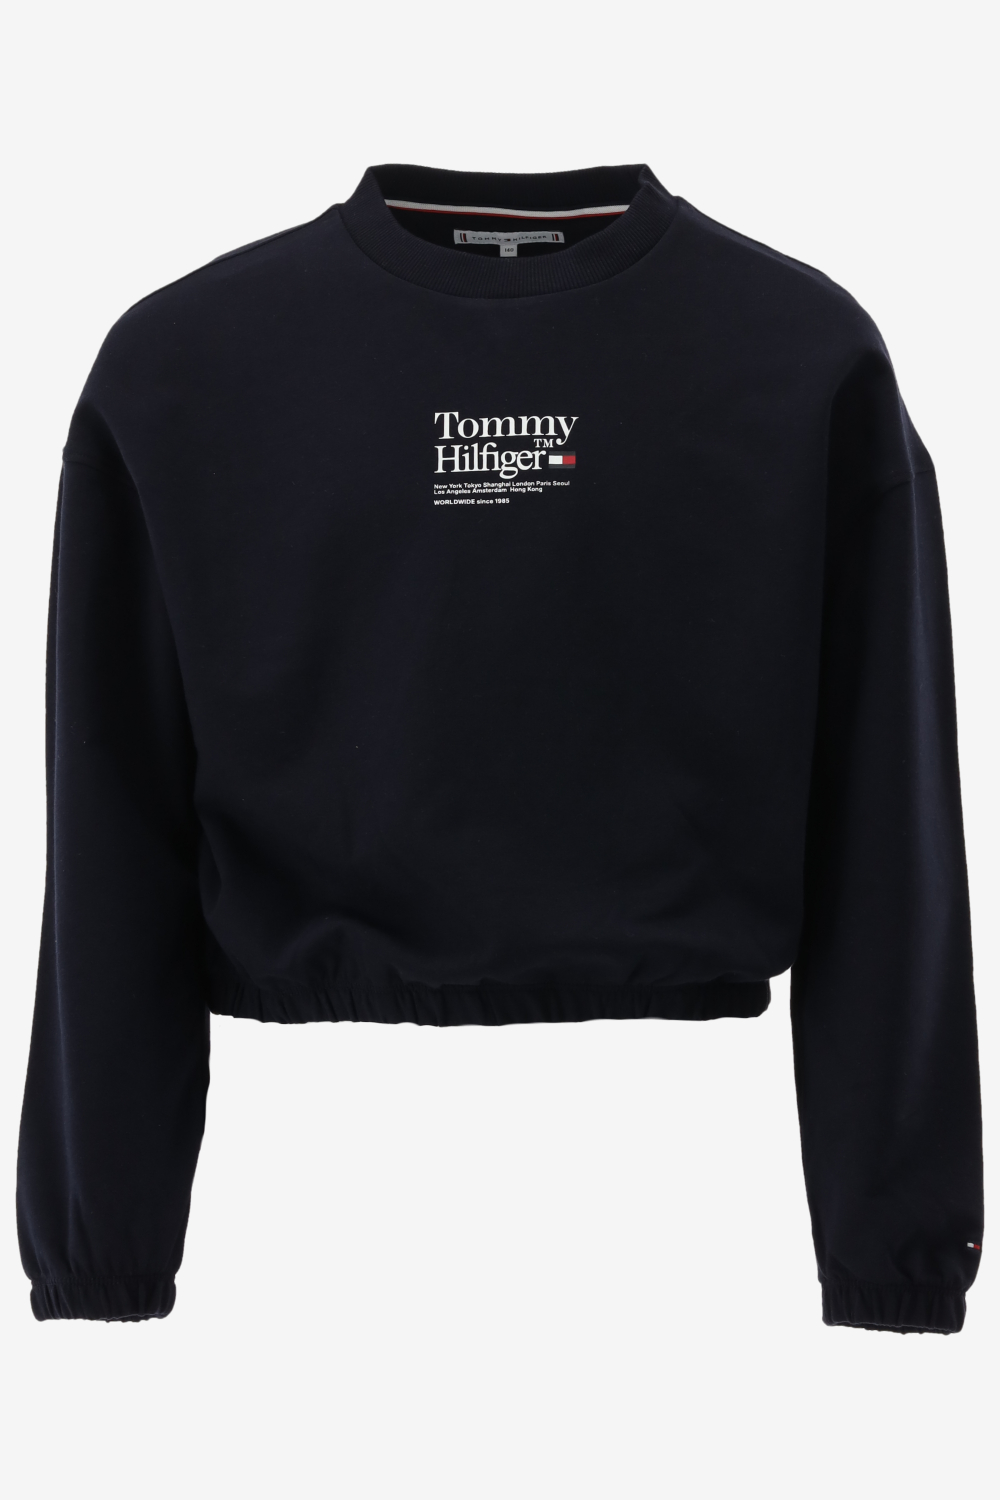 Tommy hilfiger sweater maat 128/8J